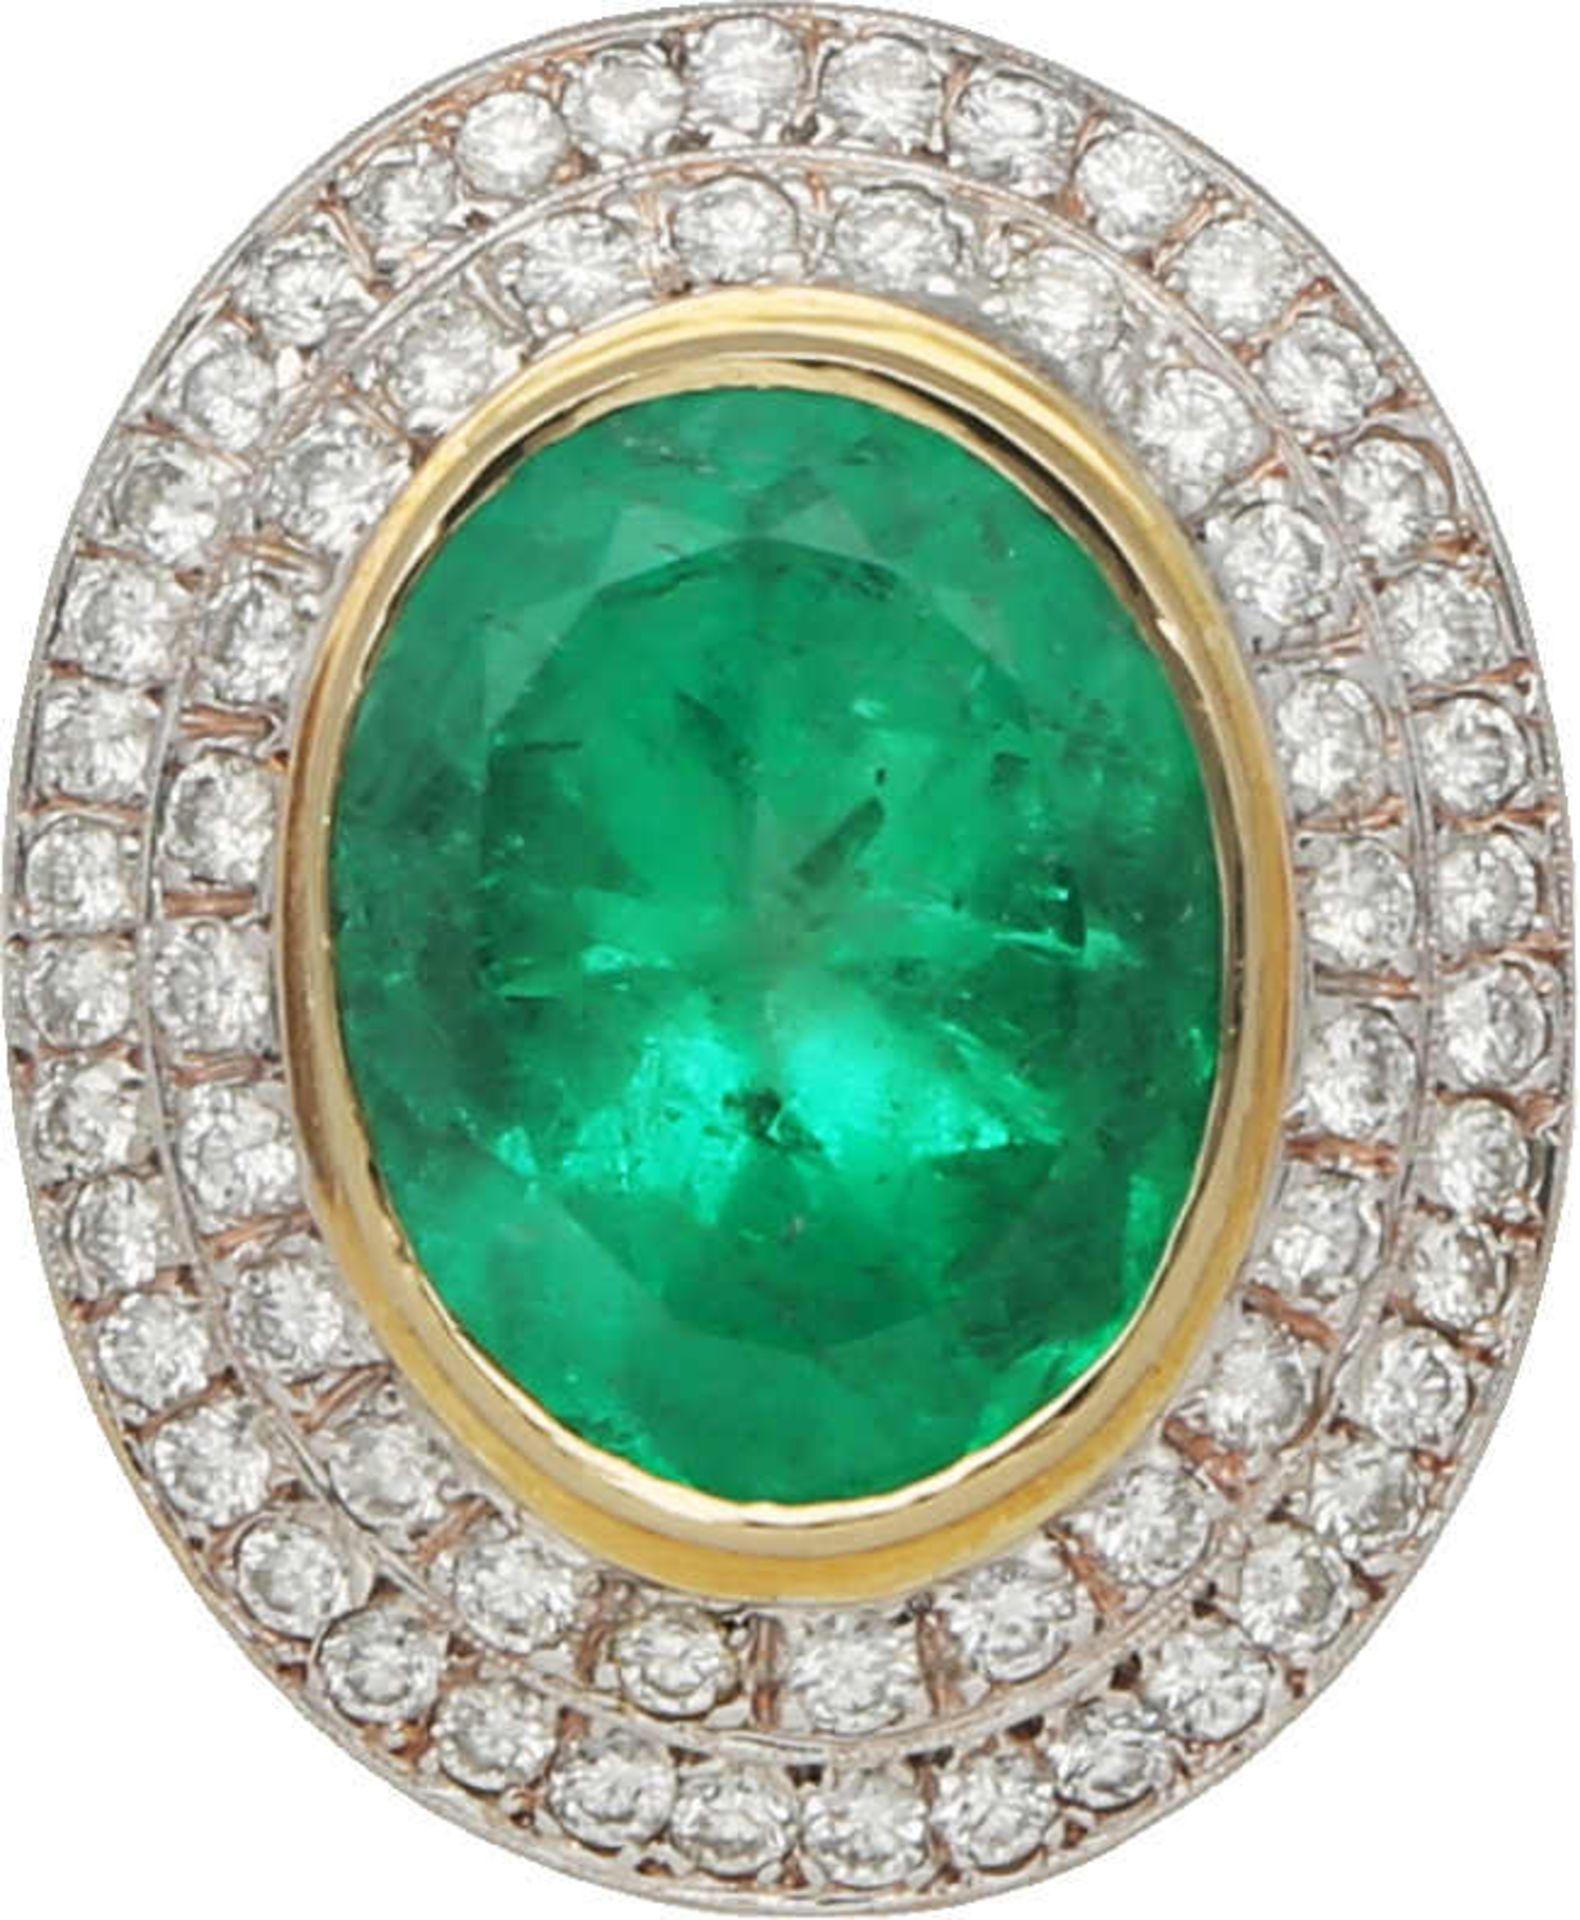 Smaragd-Brillant Ring Atemberaubendes Schmuckstück, signiert HOFK, in Gelbgold/Weissgold 14K mit